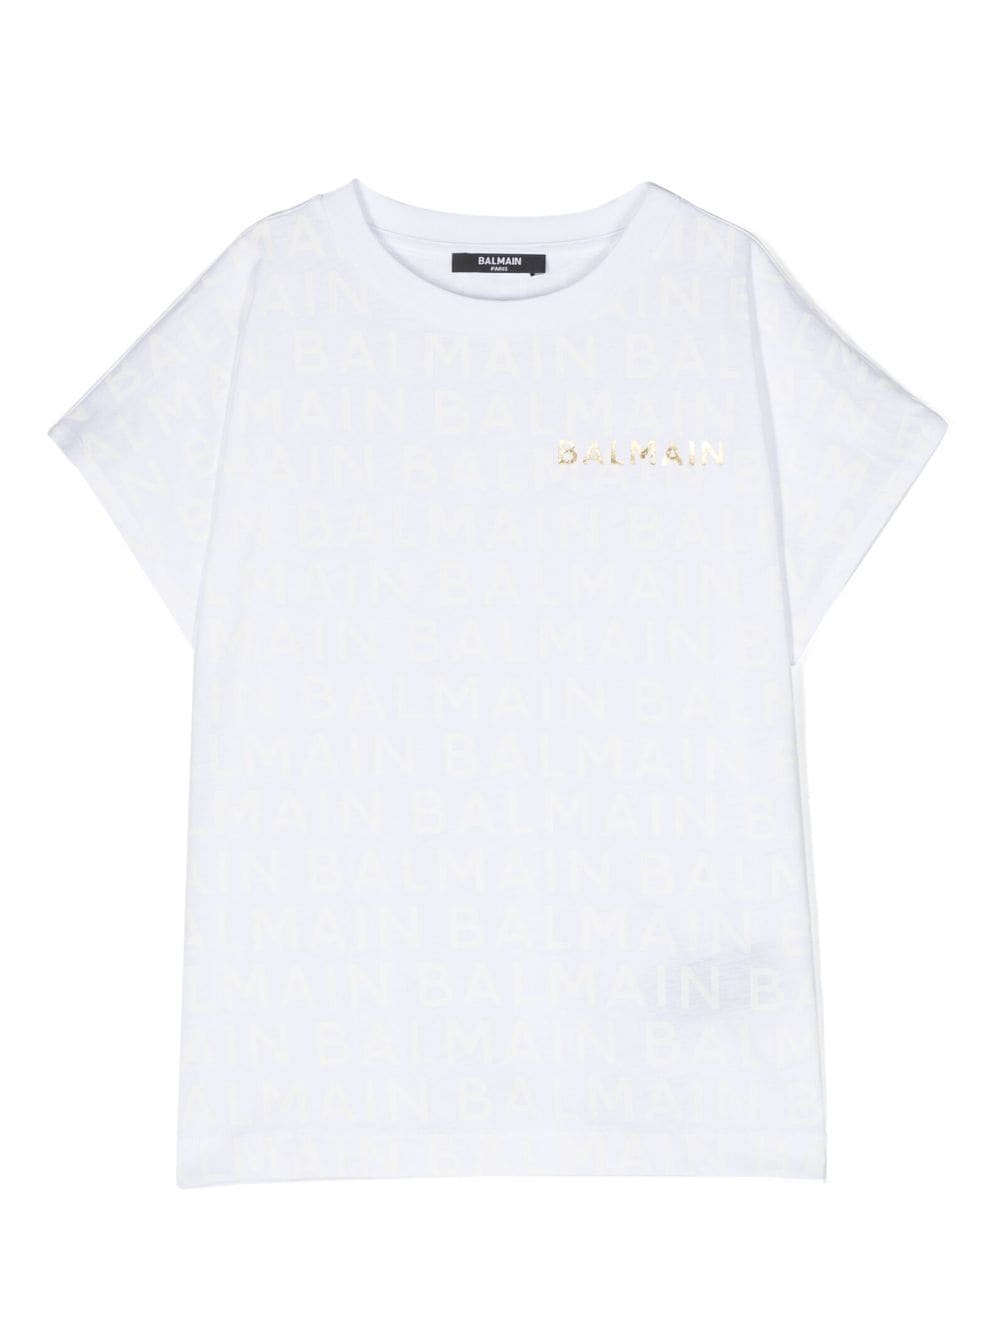 T-shirt fille blanc avec imprimé doré